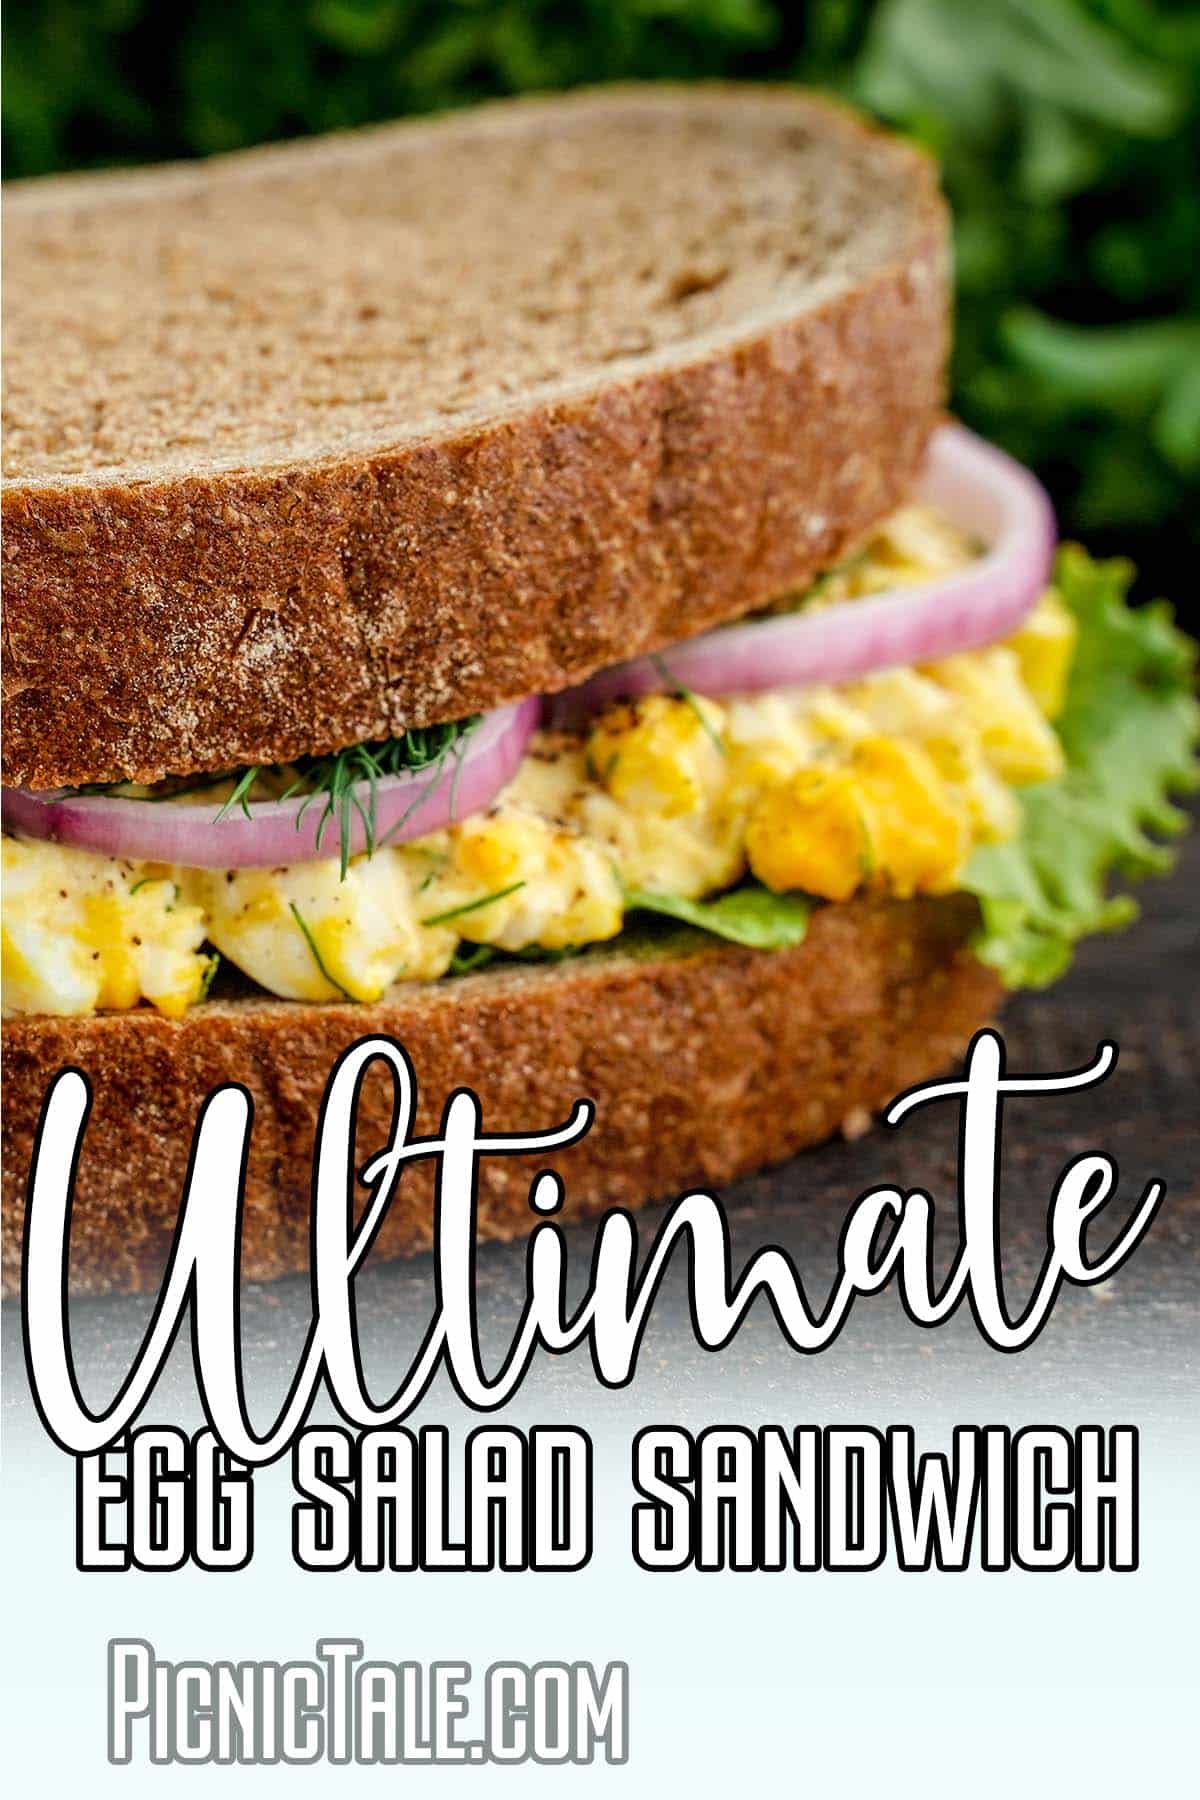 Ultimate egg salad sandwich, lettering on bottom.